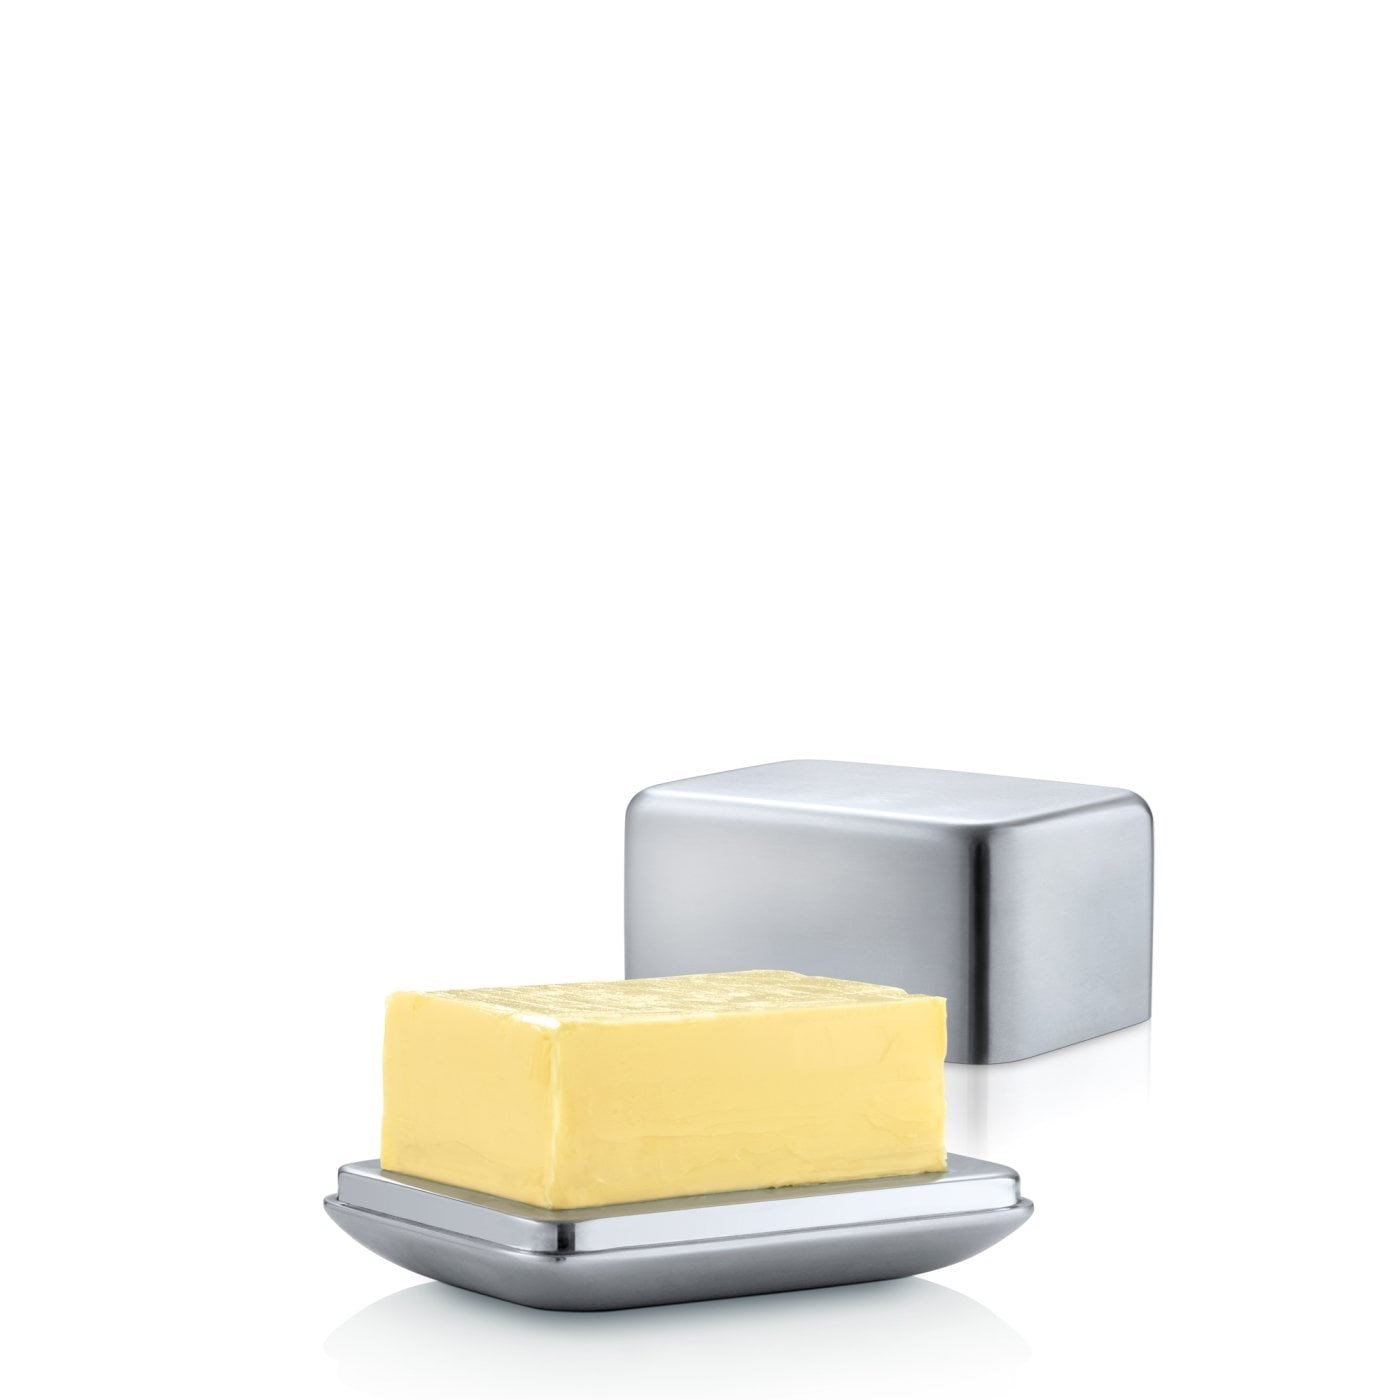 Obrázok z Dóza na maslo 250g BASIC